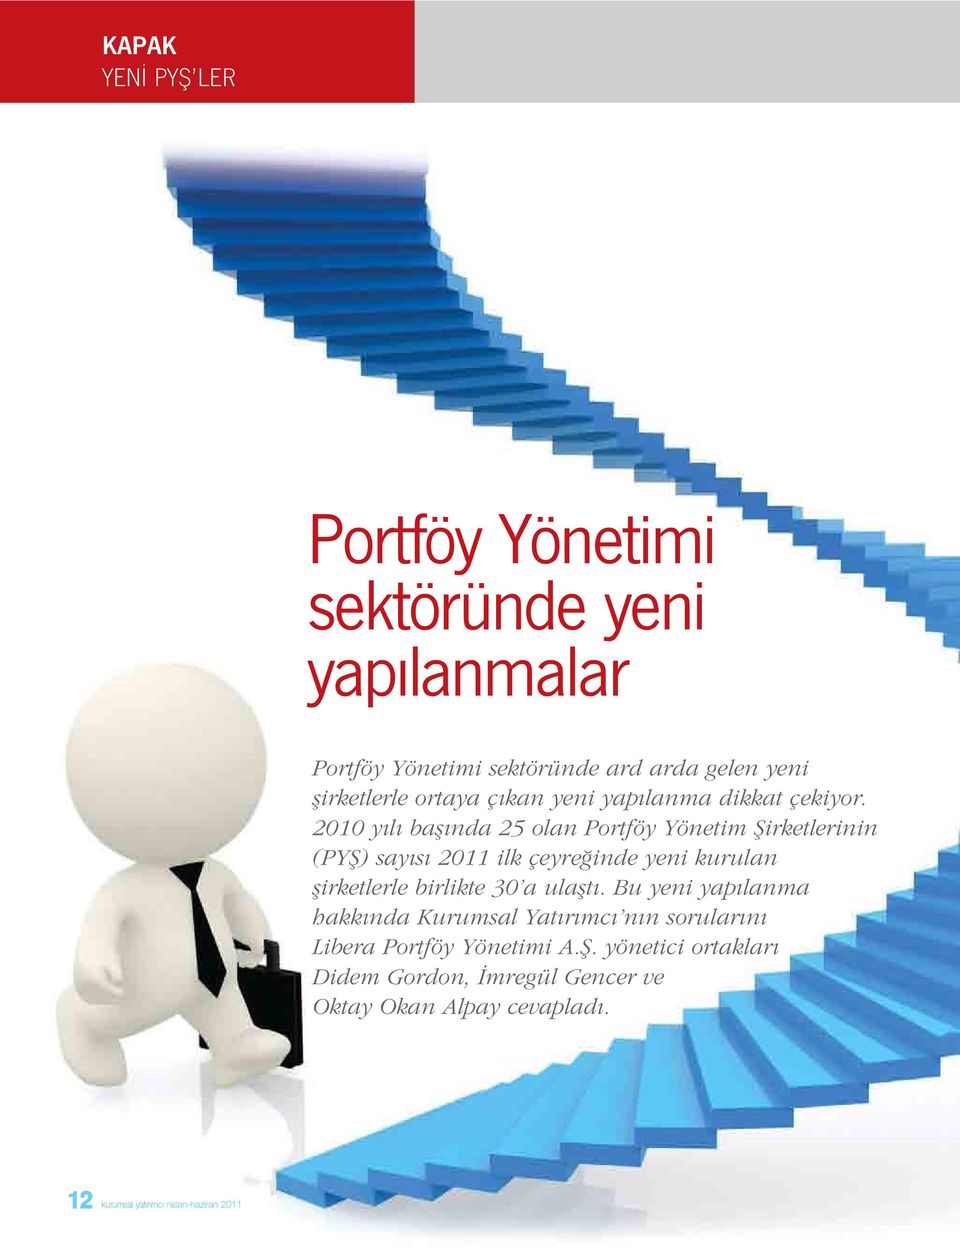 2010 yılı başında 25 olan Portföy Yönetim Şirketlerinin (PYŞ) sayısı 2011 ilk çeyreğinde yeni kurulan şirketlerle birlikte 30 a